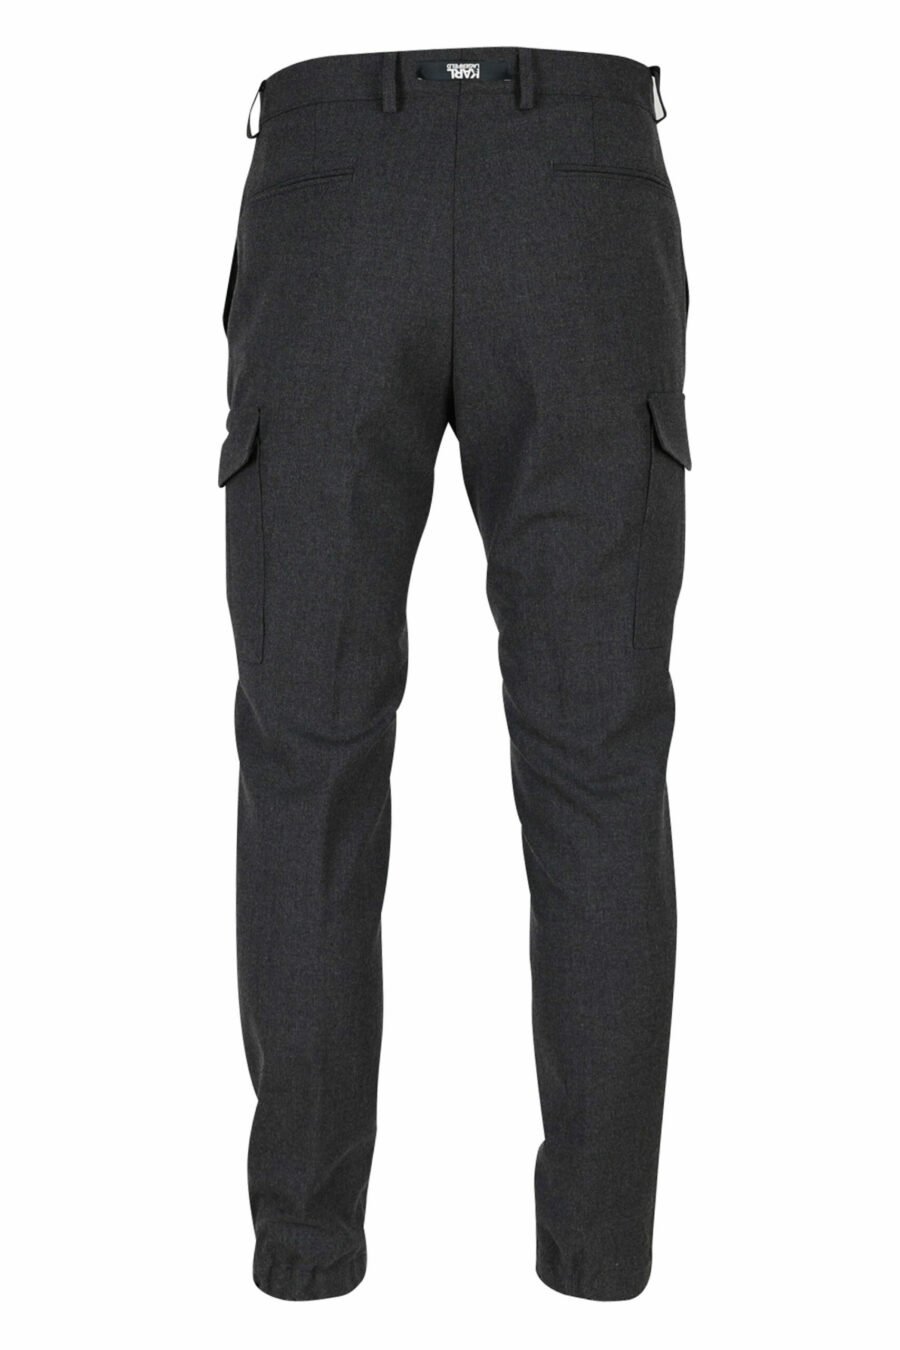 Pantalon de costume gris - 4062226397018 14 échelles